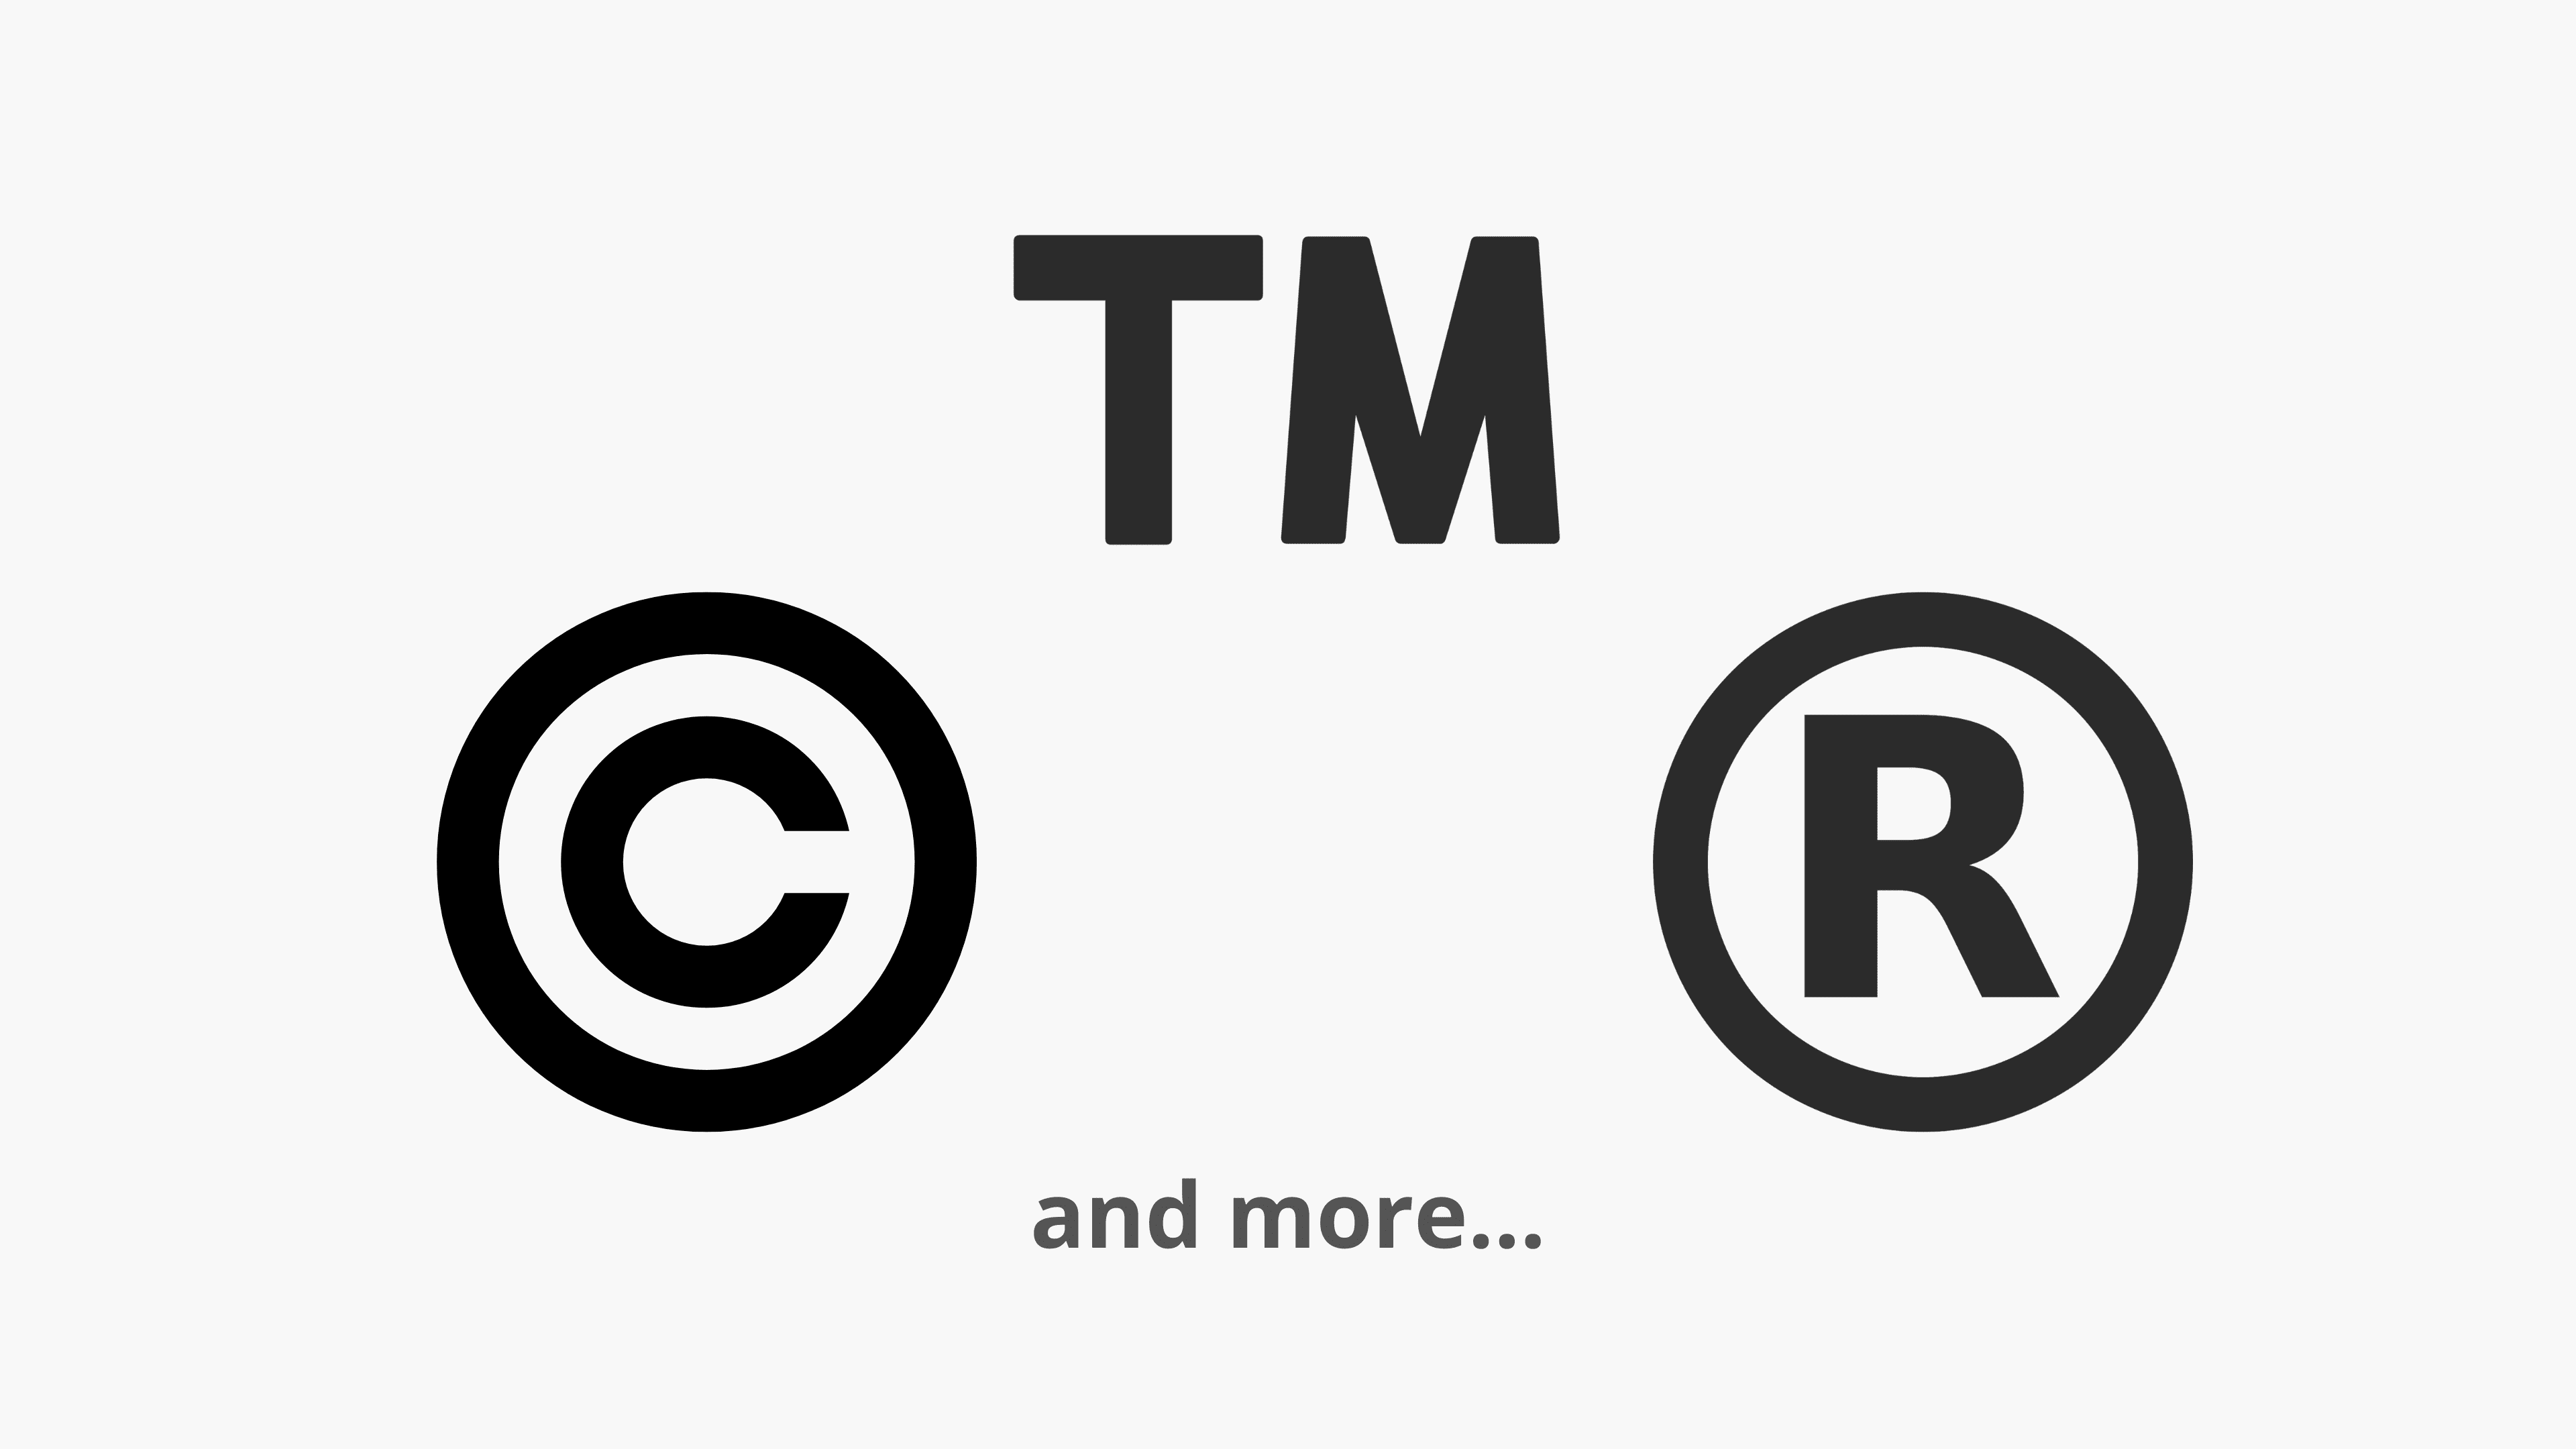 keystrokes for registered trademark symbol